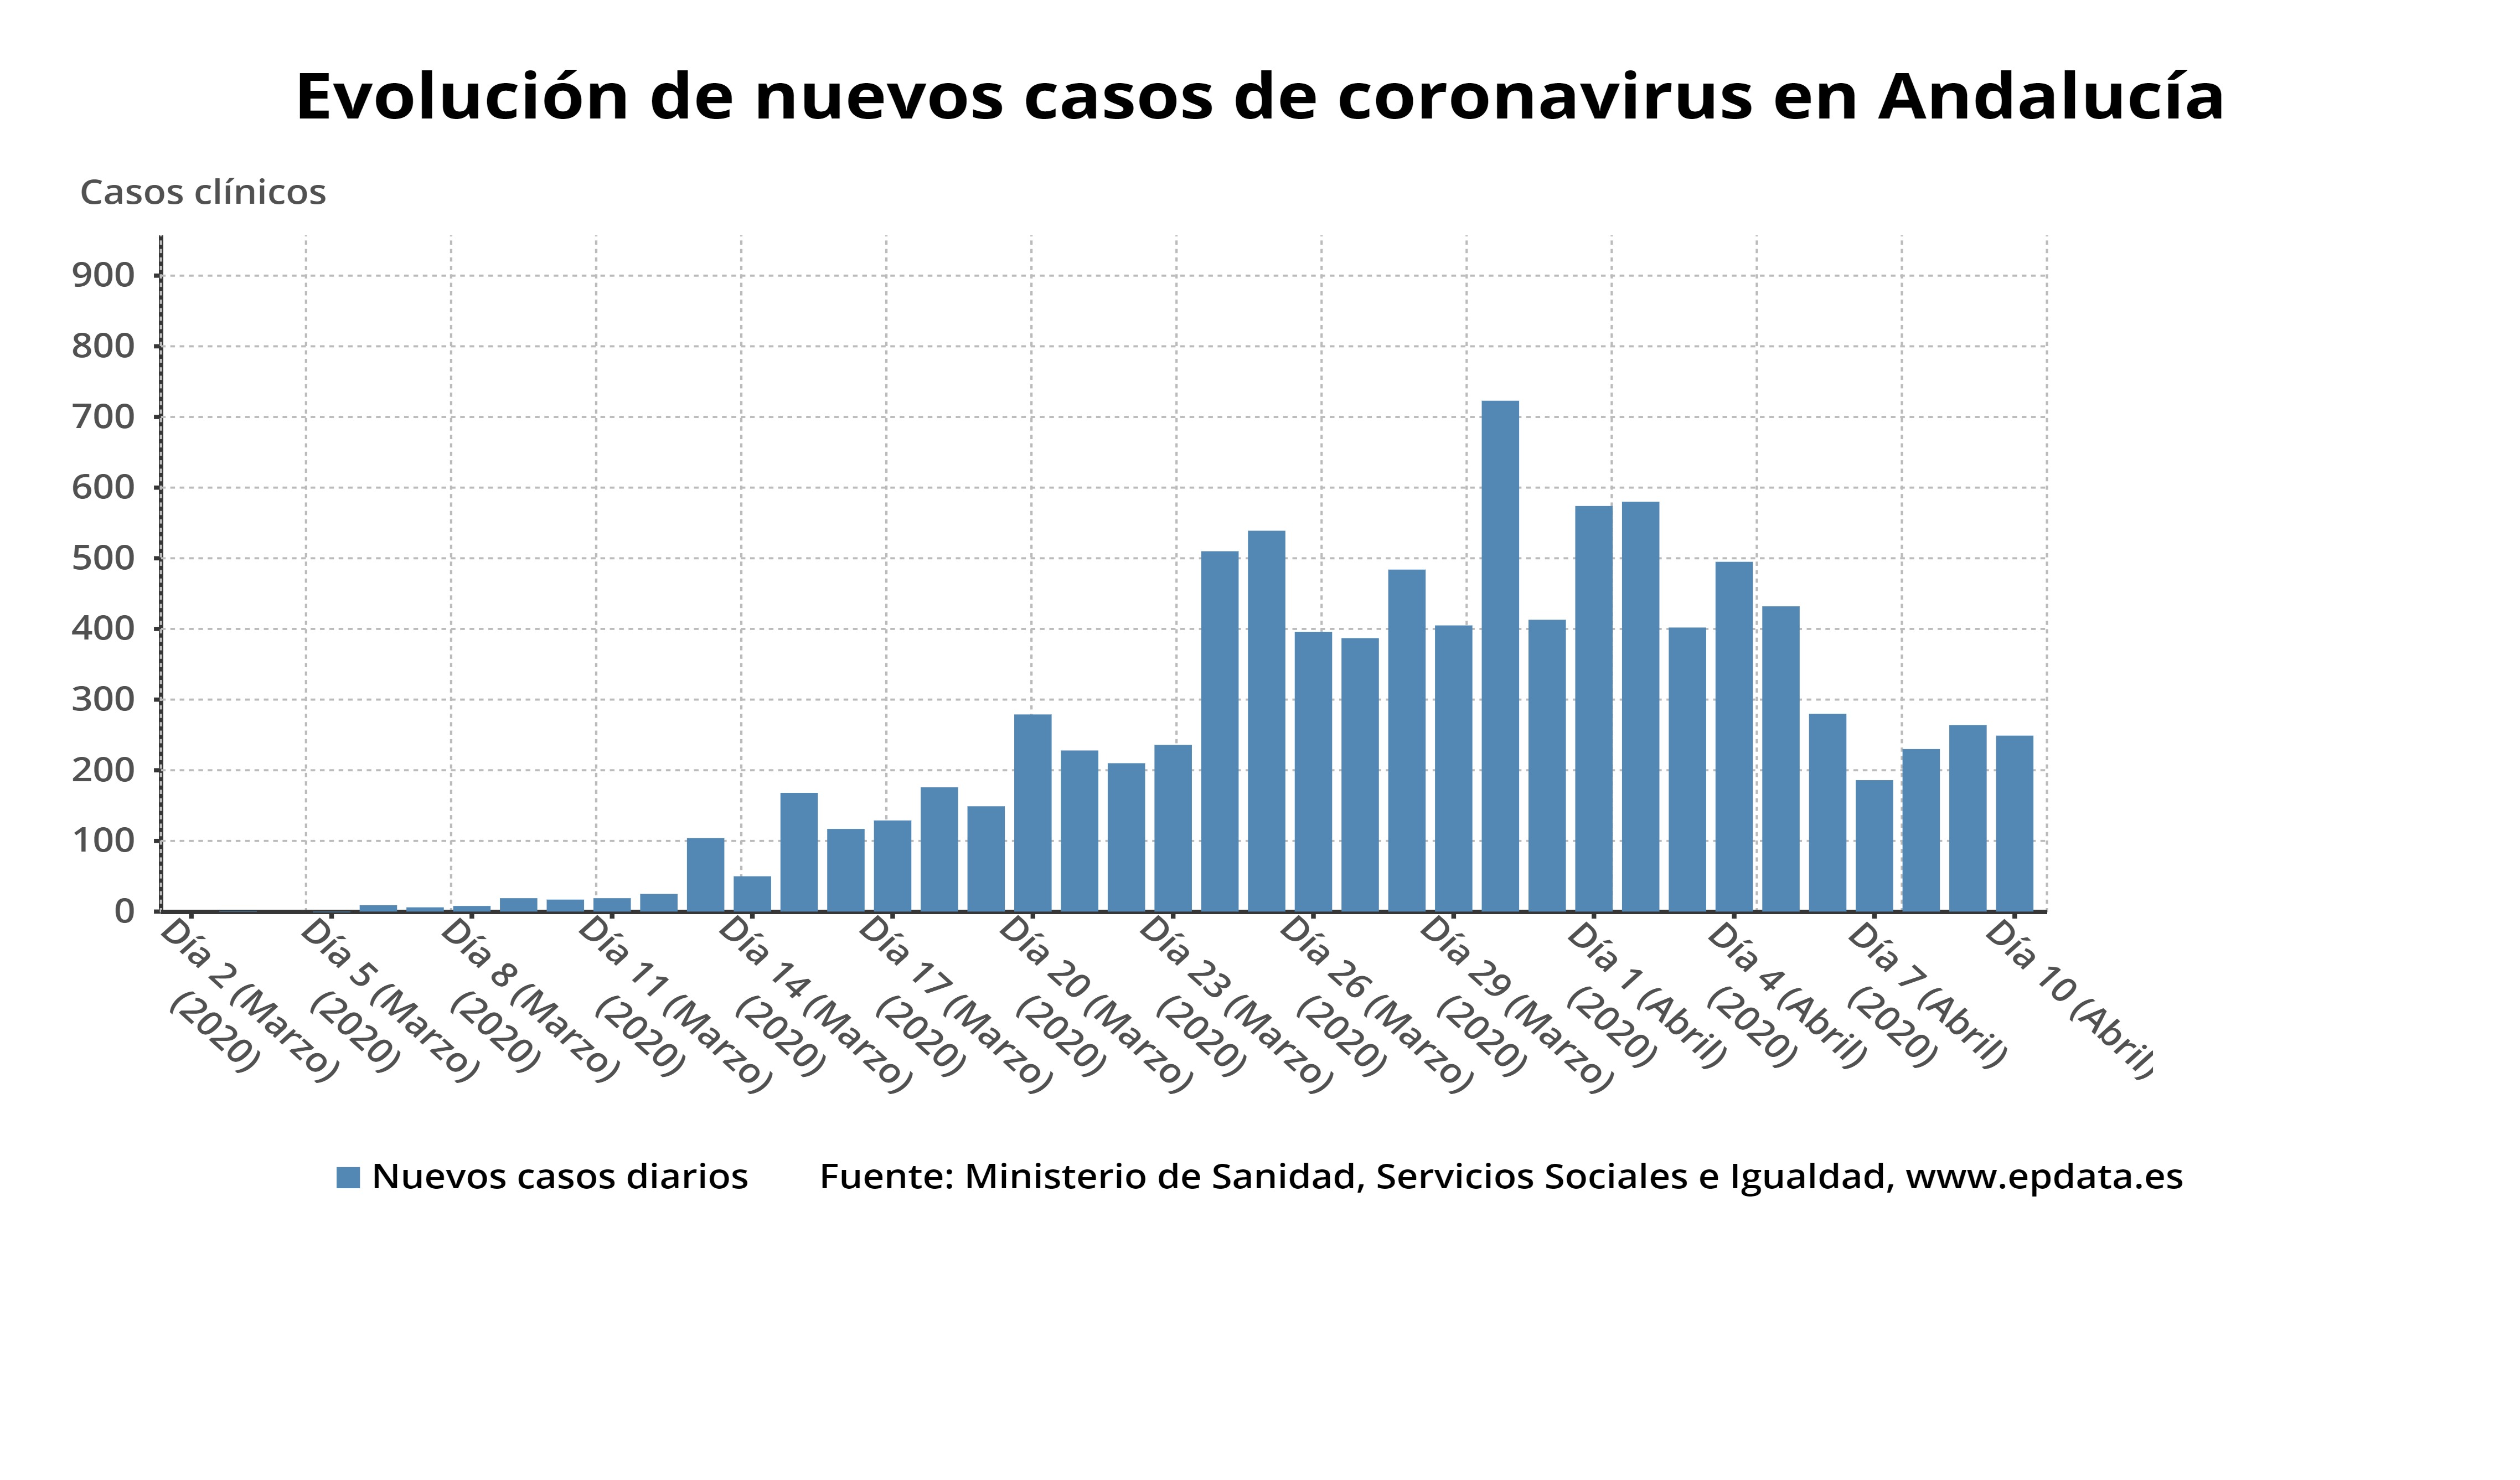 Evolución de nuevos casos diarios de coronavirus en Andalucía a 10 de abril de 2020